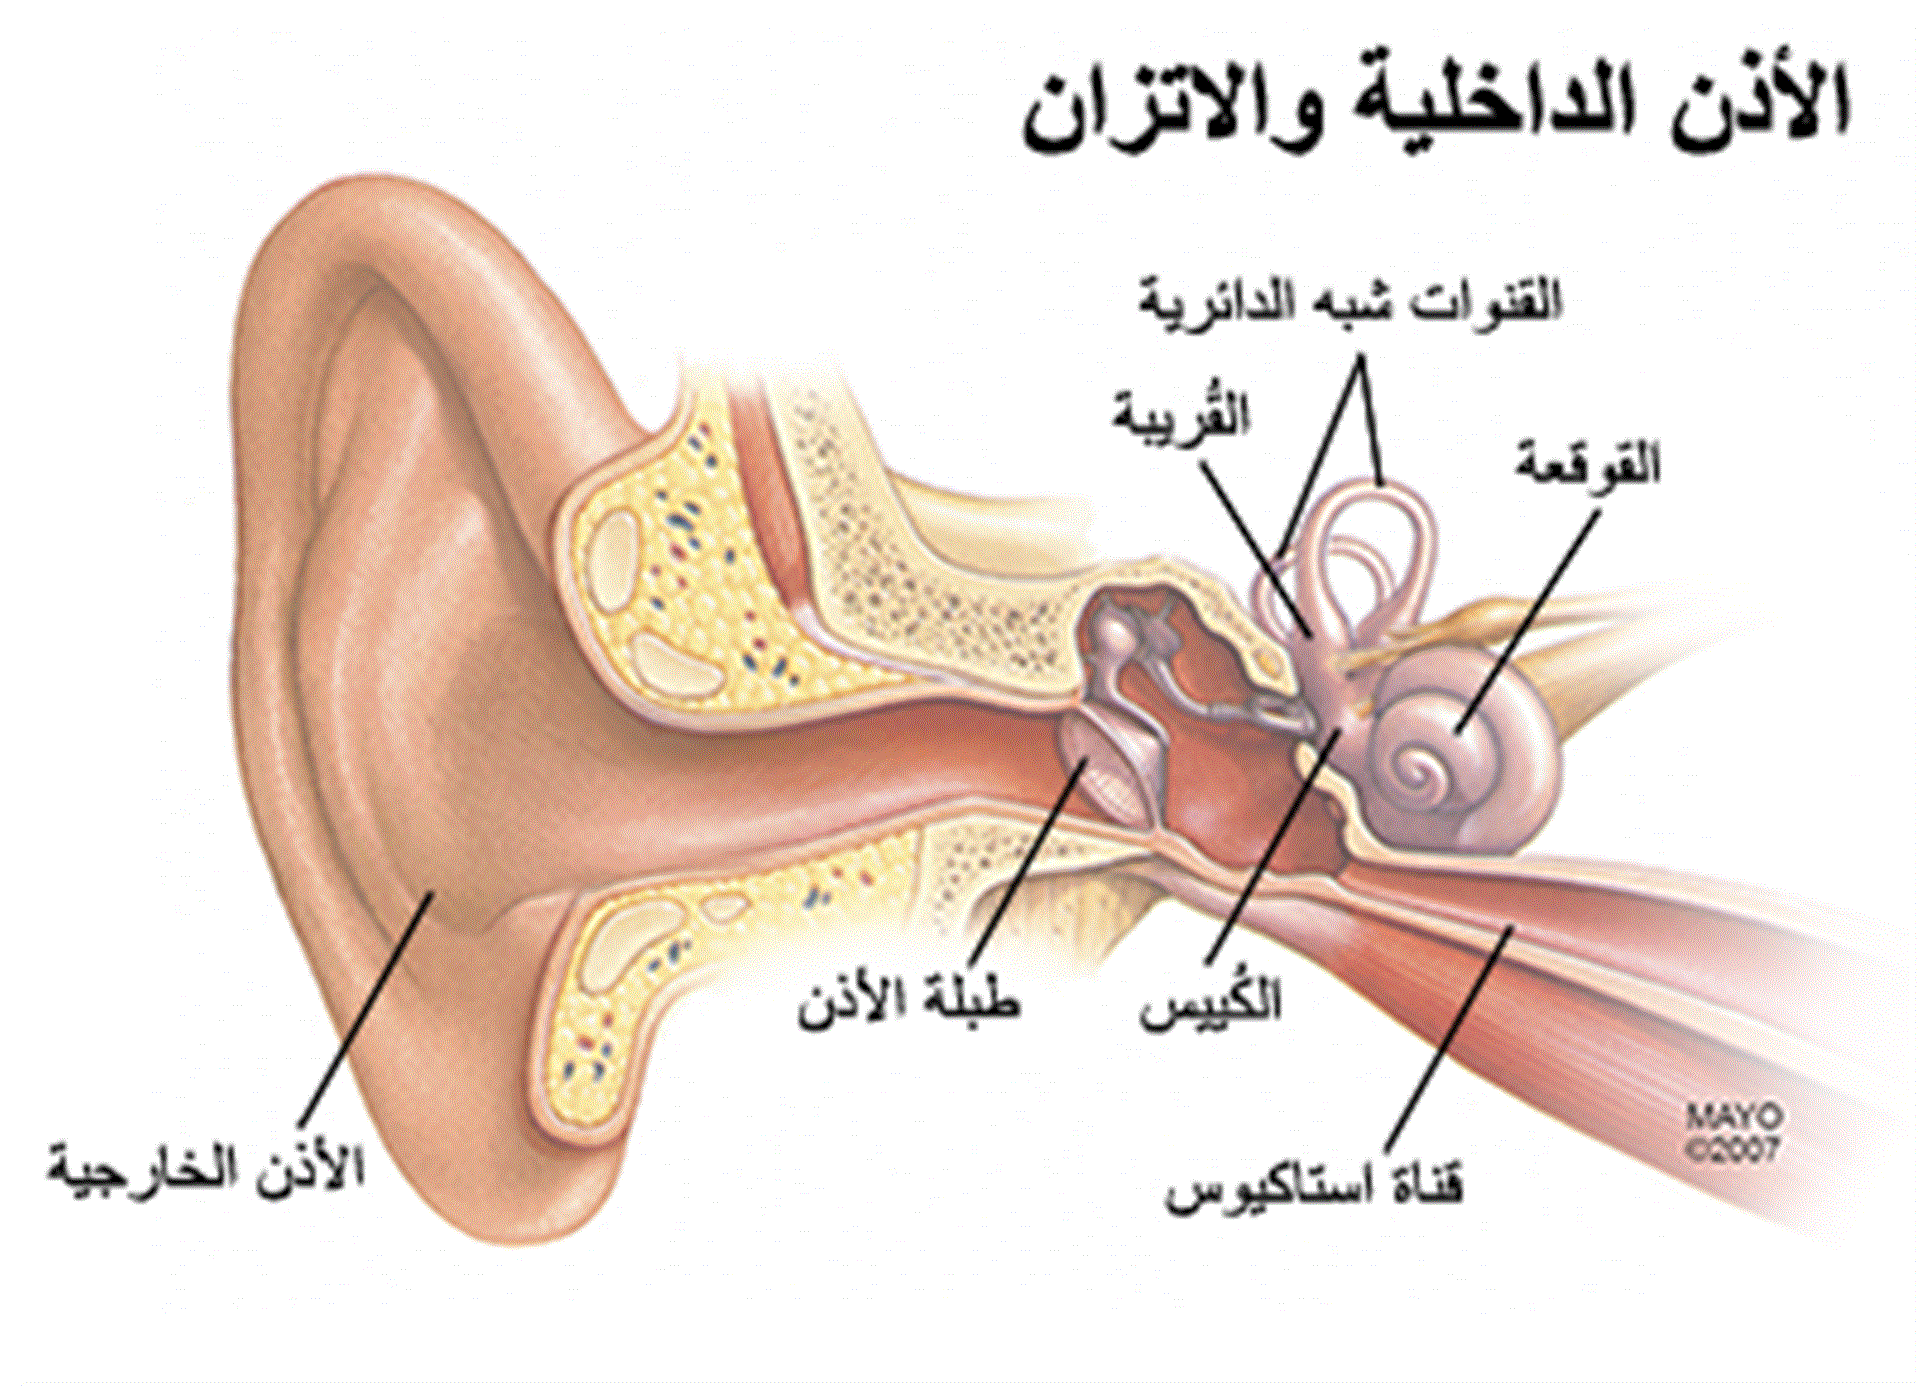 اي الاجزاء التالية جزء من الاذن الداخلية